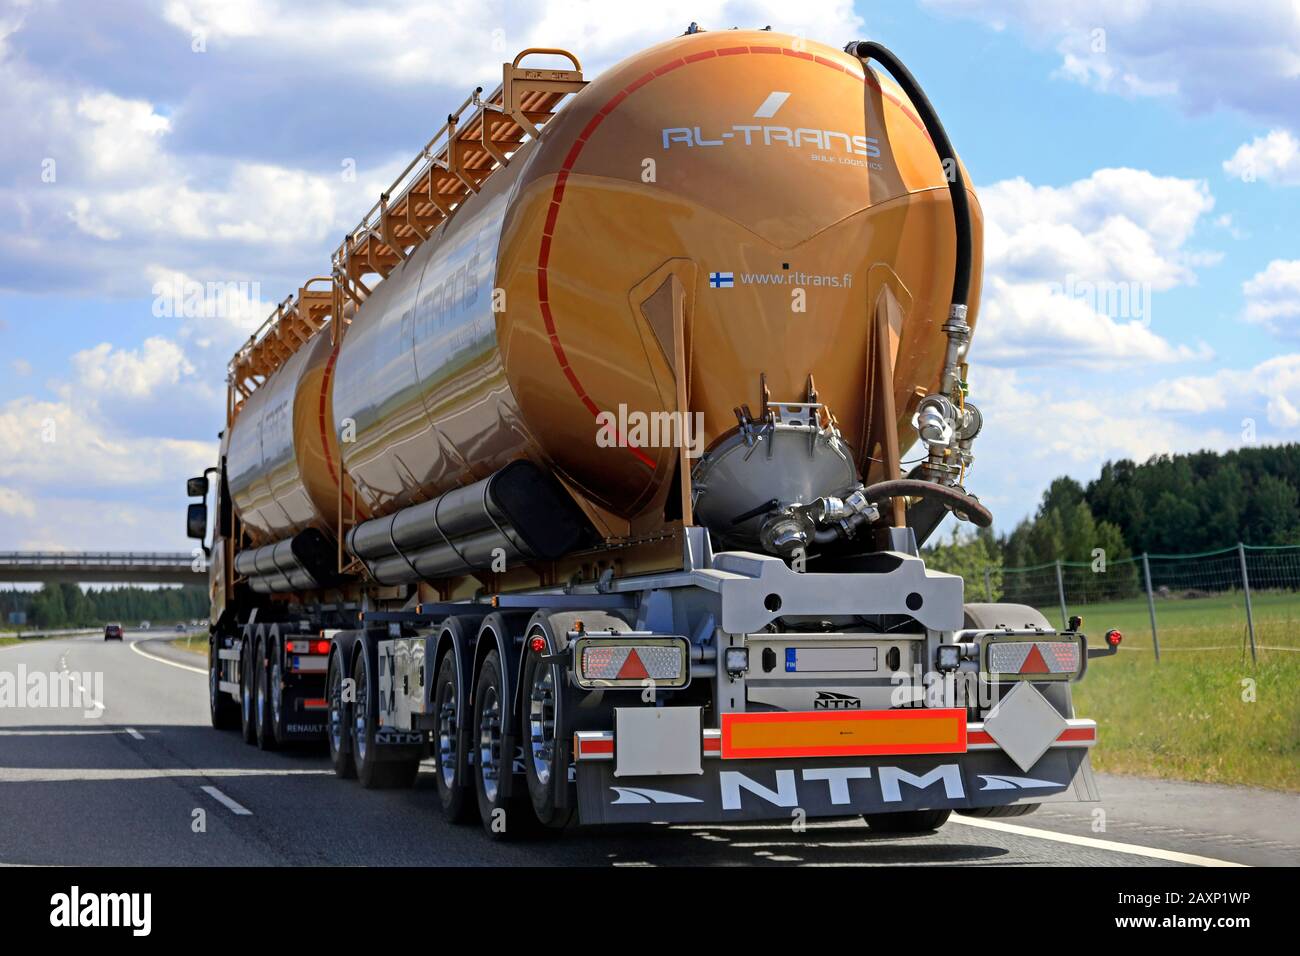 Prendre un camion tirant la remorque à double réservoir sur l'autoroute, vue arrière, un beau jour d'été. Akaa, Finlande. 17 Juin 2018. Banque D'Images